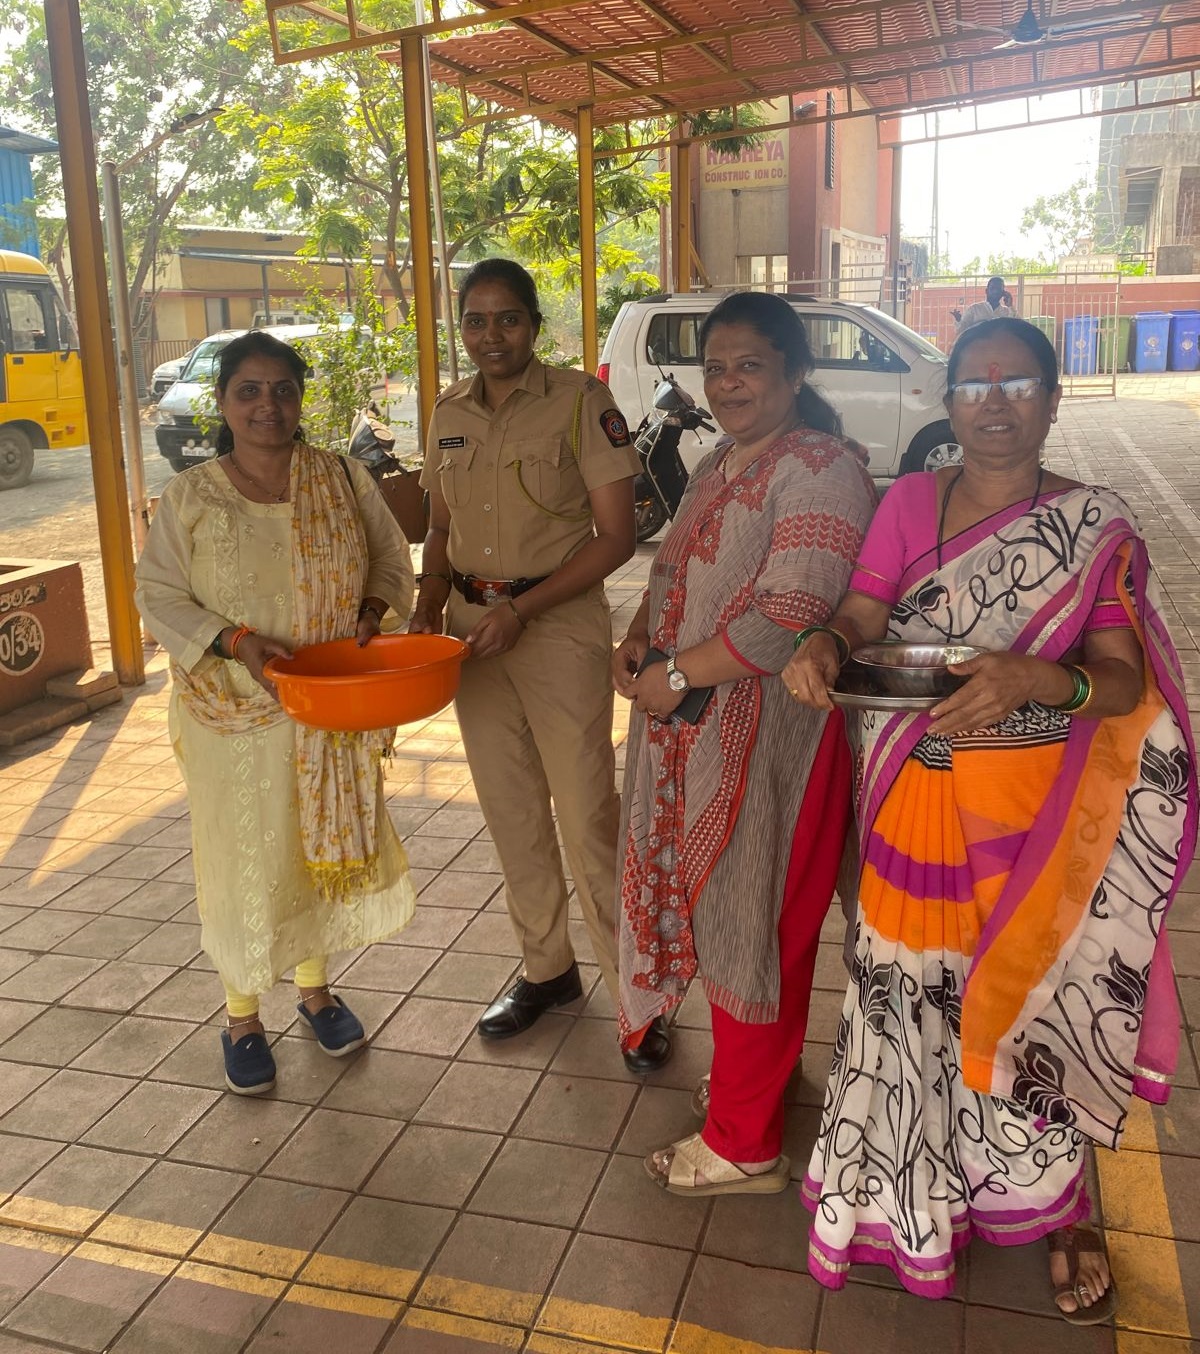 इसके अलावा शिव सेना (यूबीटी) की महिला कार्यकर्ताओं ने नायगांव परेरा नगर स्थित पुलिस डिविजन में जाकर वहां मौजूद पुलिस महिला अधिकारी को हल्दी कुंकू का सम्मान दिया.